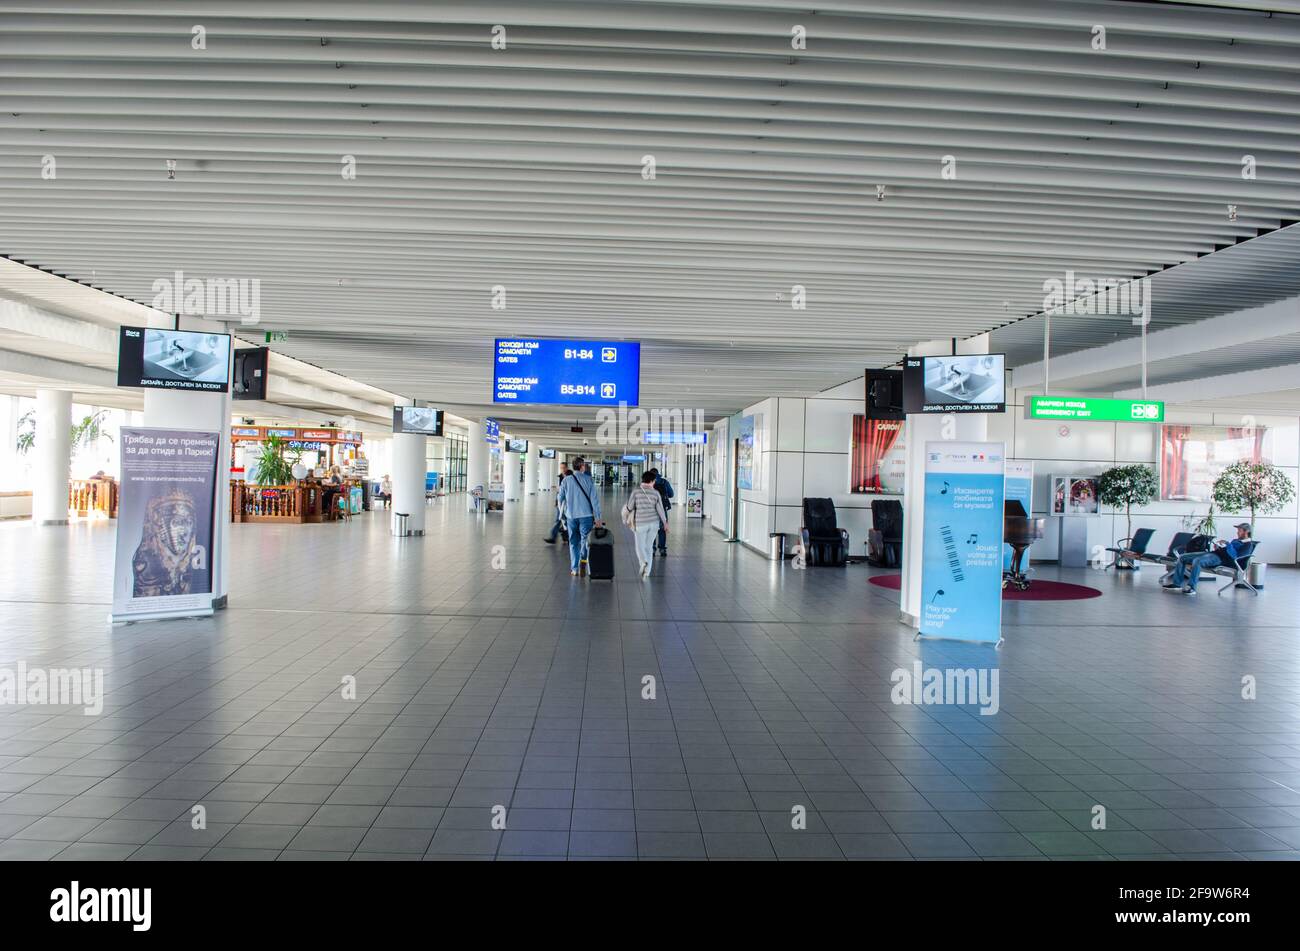 SOFIA, 20 FÉVRIER 2015 : intérieur de l'aéroport international de sofia. Banque D'Images